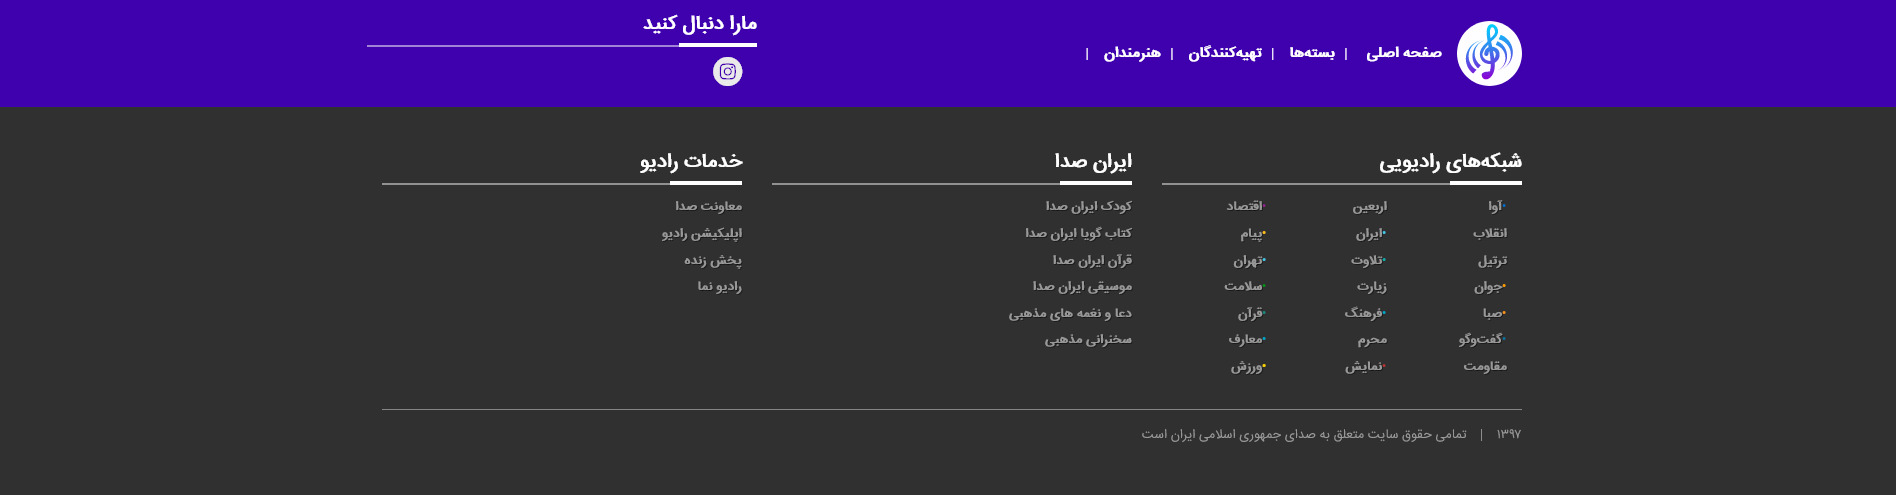 فوتر وبسایت پایگاه موسیقی ایران صدا خرداد ۱۴۰۰